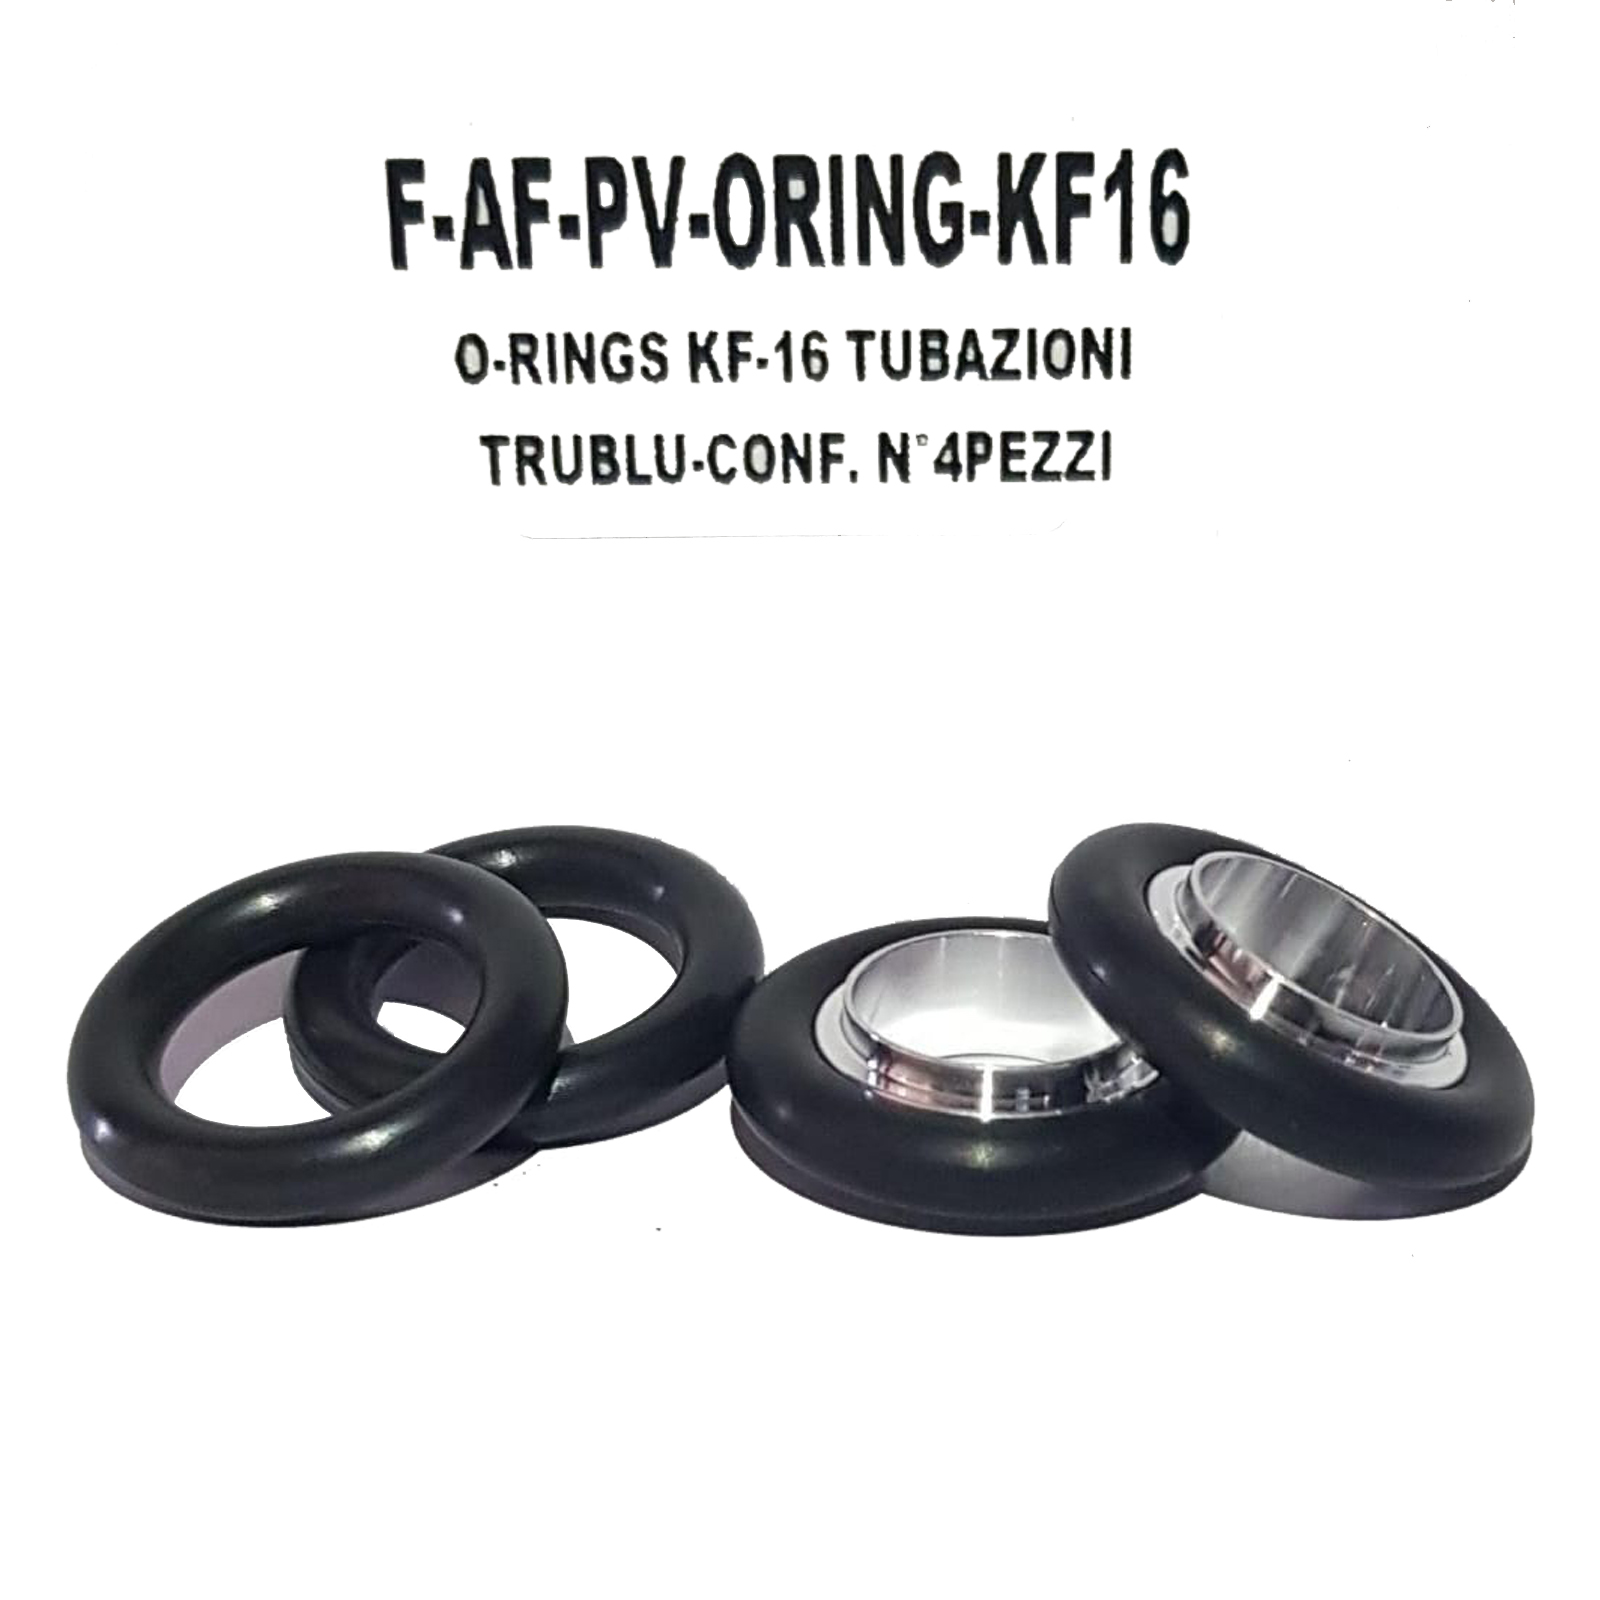 Ricambio Tubazioni Vuoto TruBlu - O-Rings KF-16 - confezione n° 4 pezzi - Foto 1 